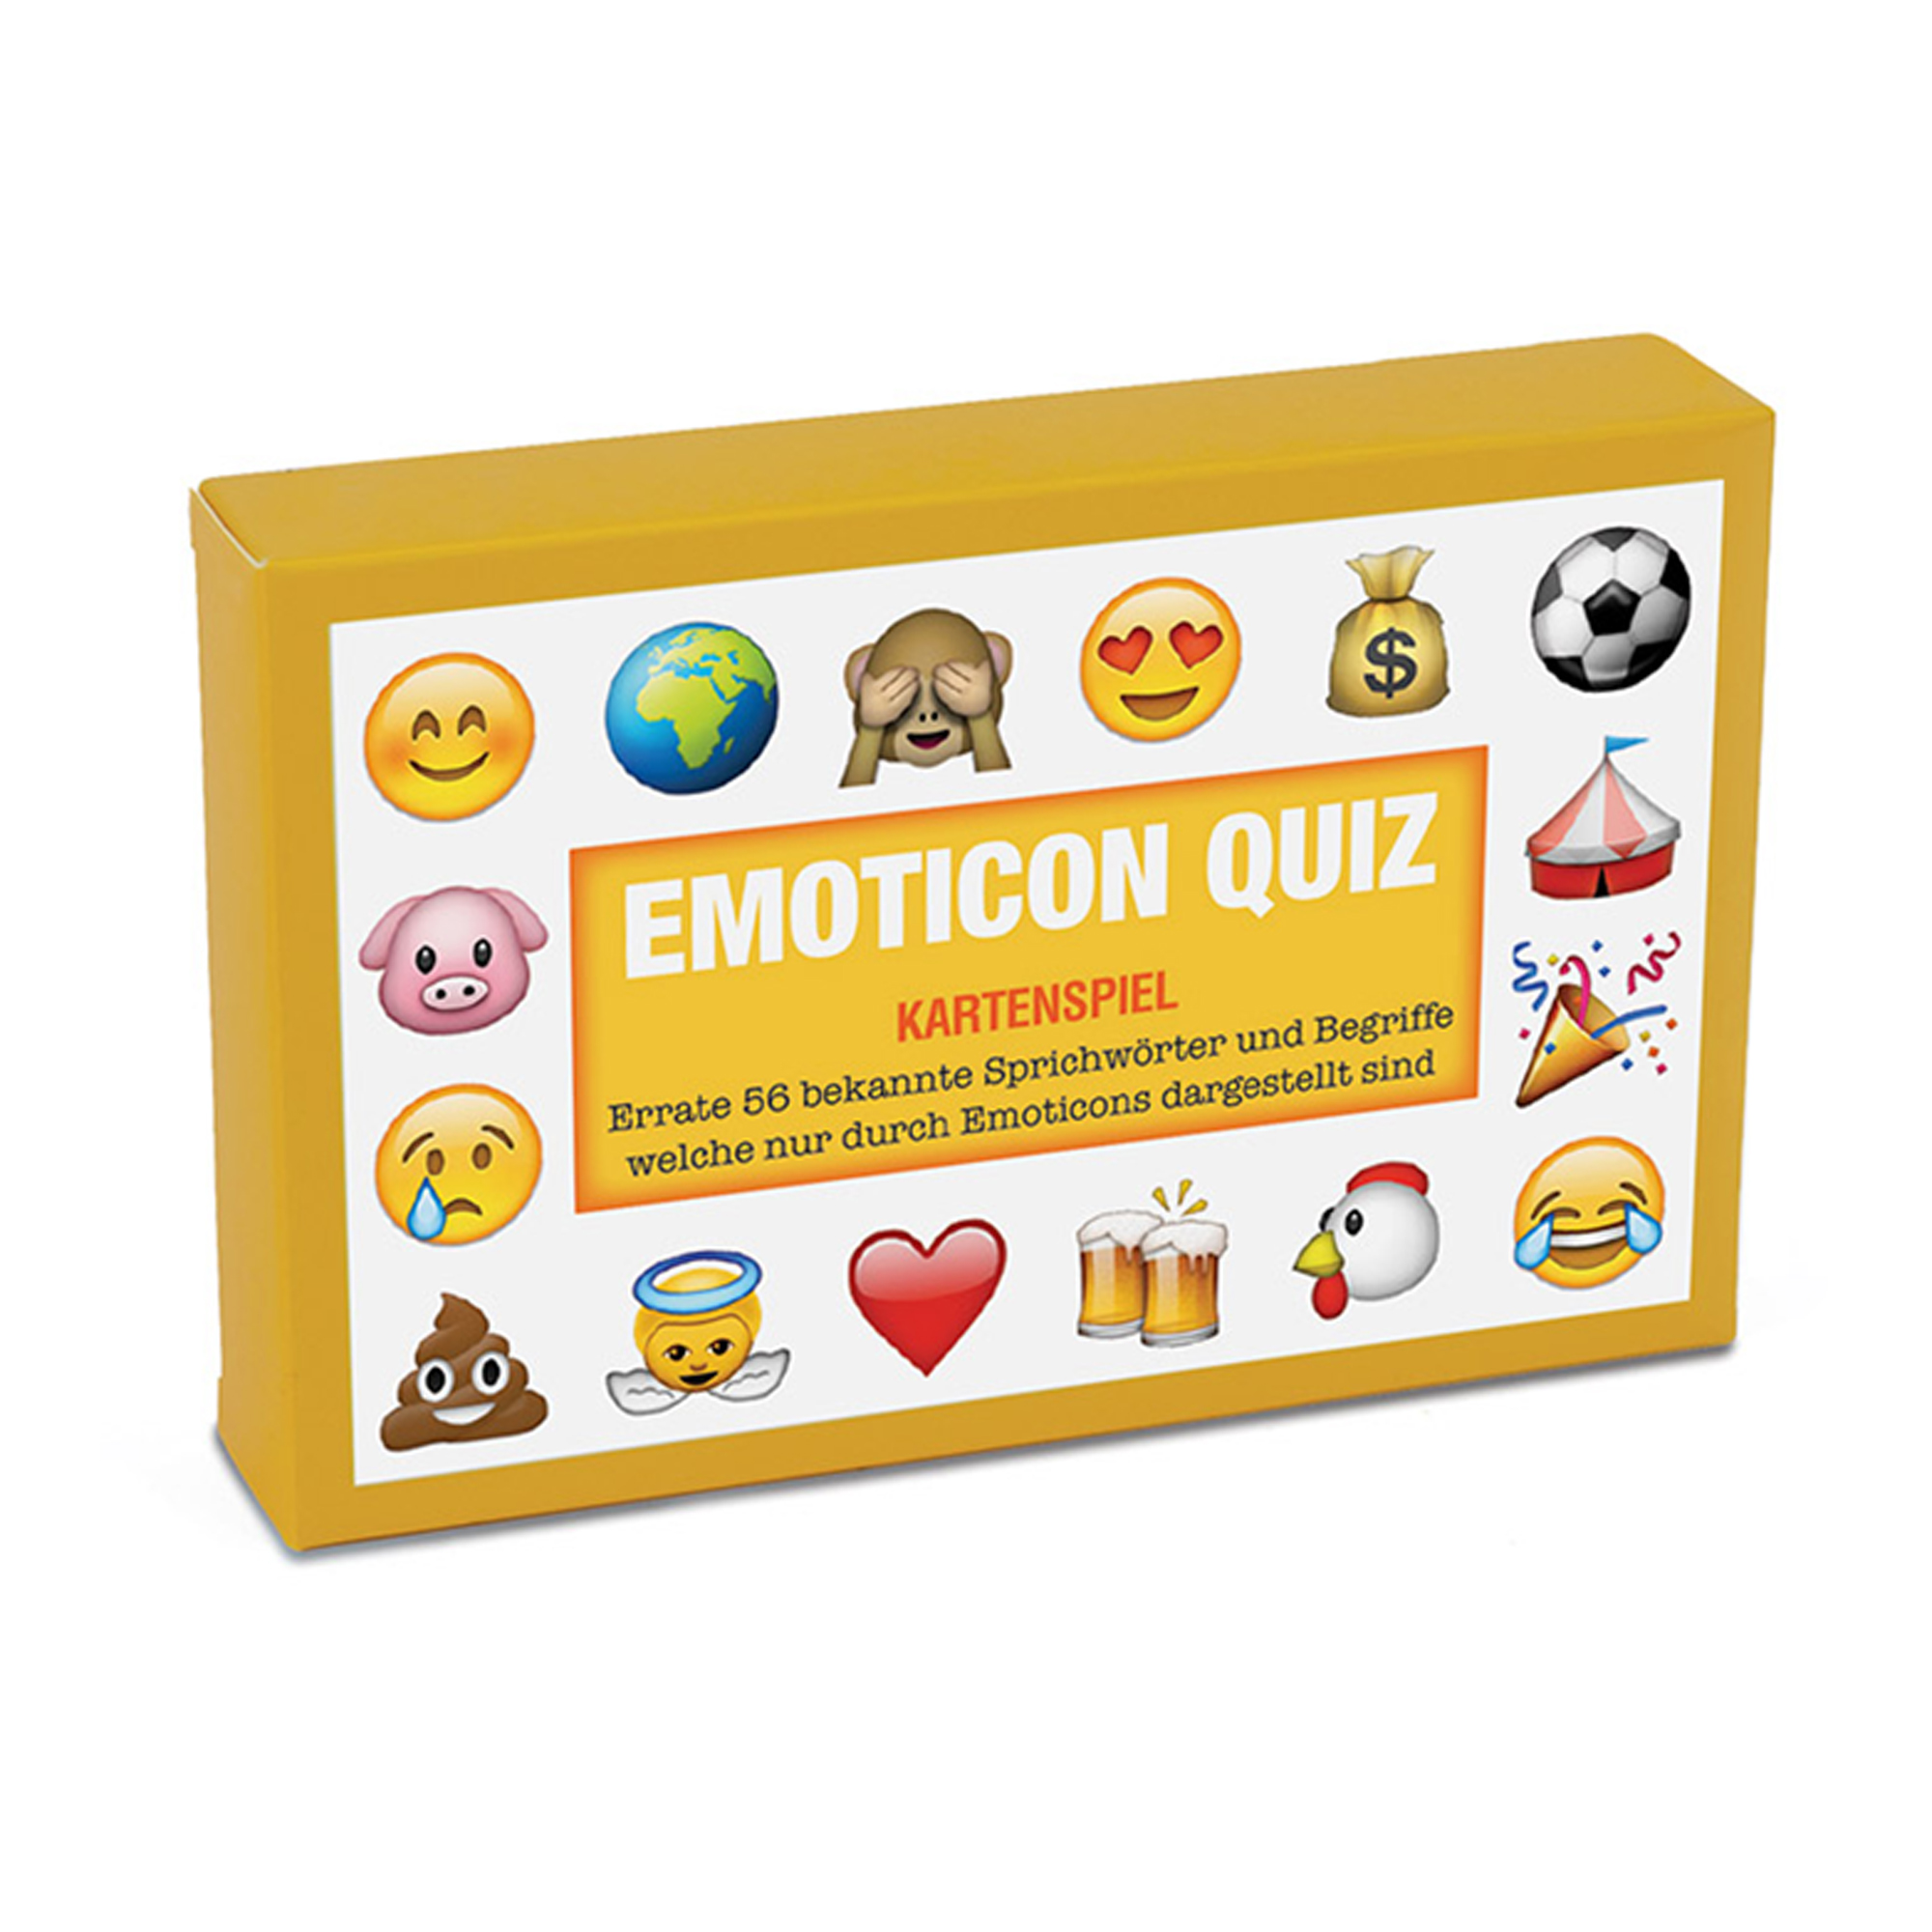 Emoticon Quiz - Kartenspiel 3551 - 6